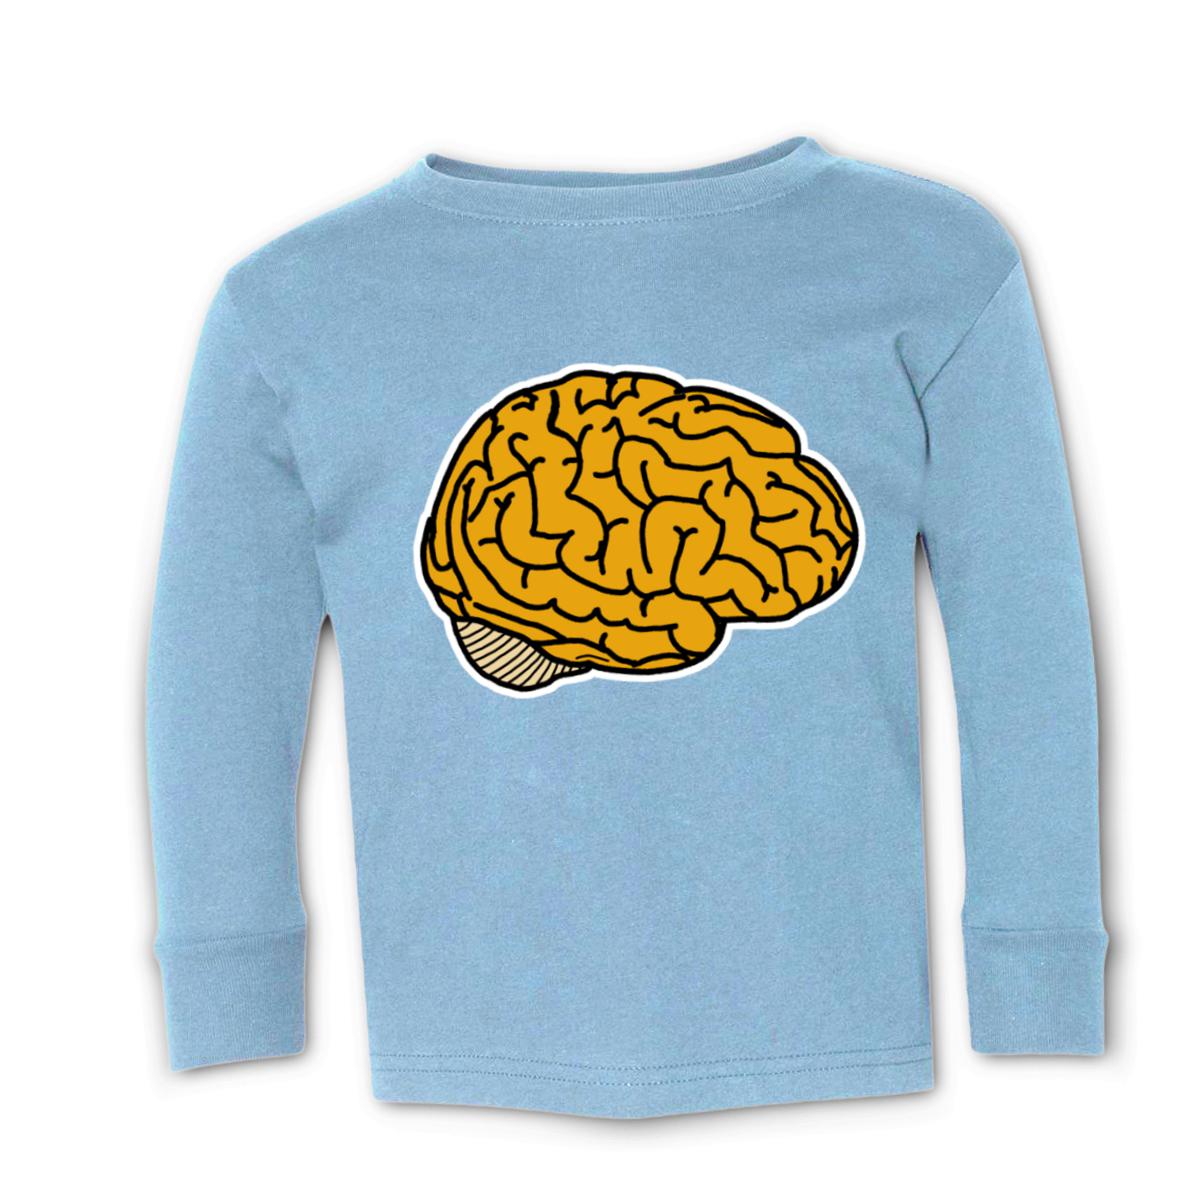 Illustrative Brain Toddler Long Sleeve Tee 2T light-blue